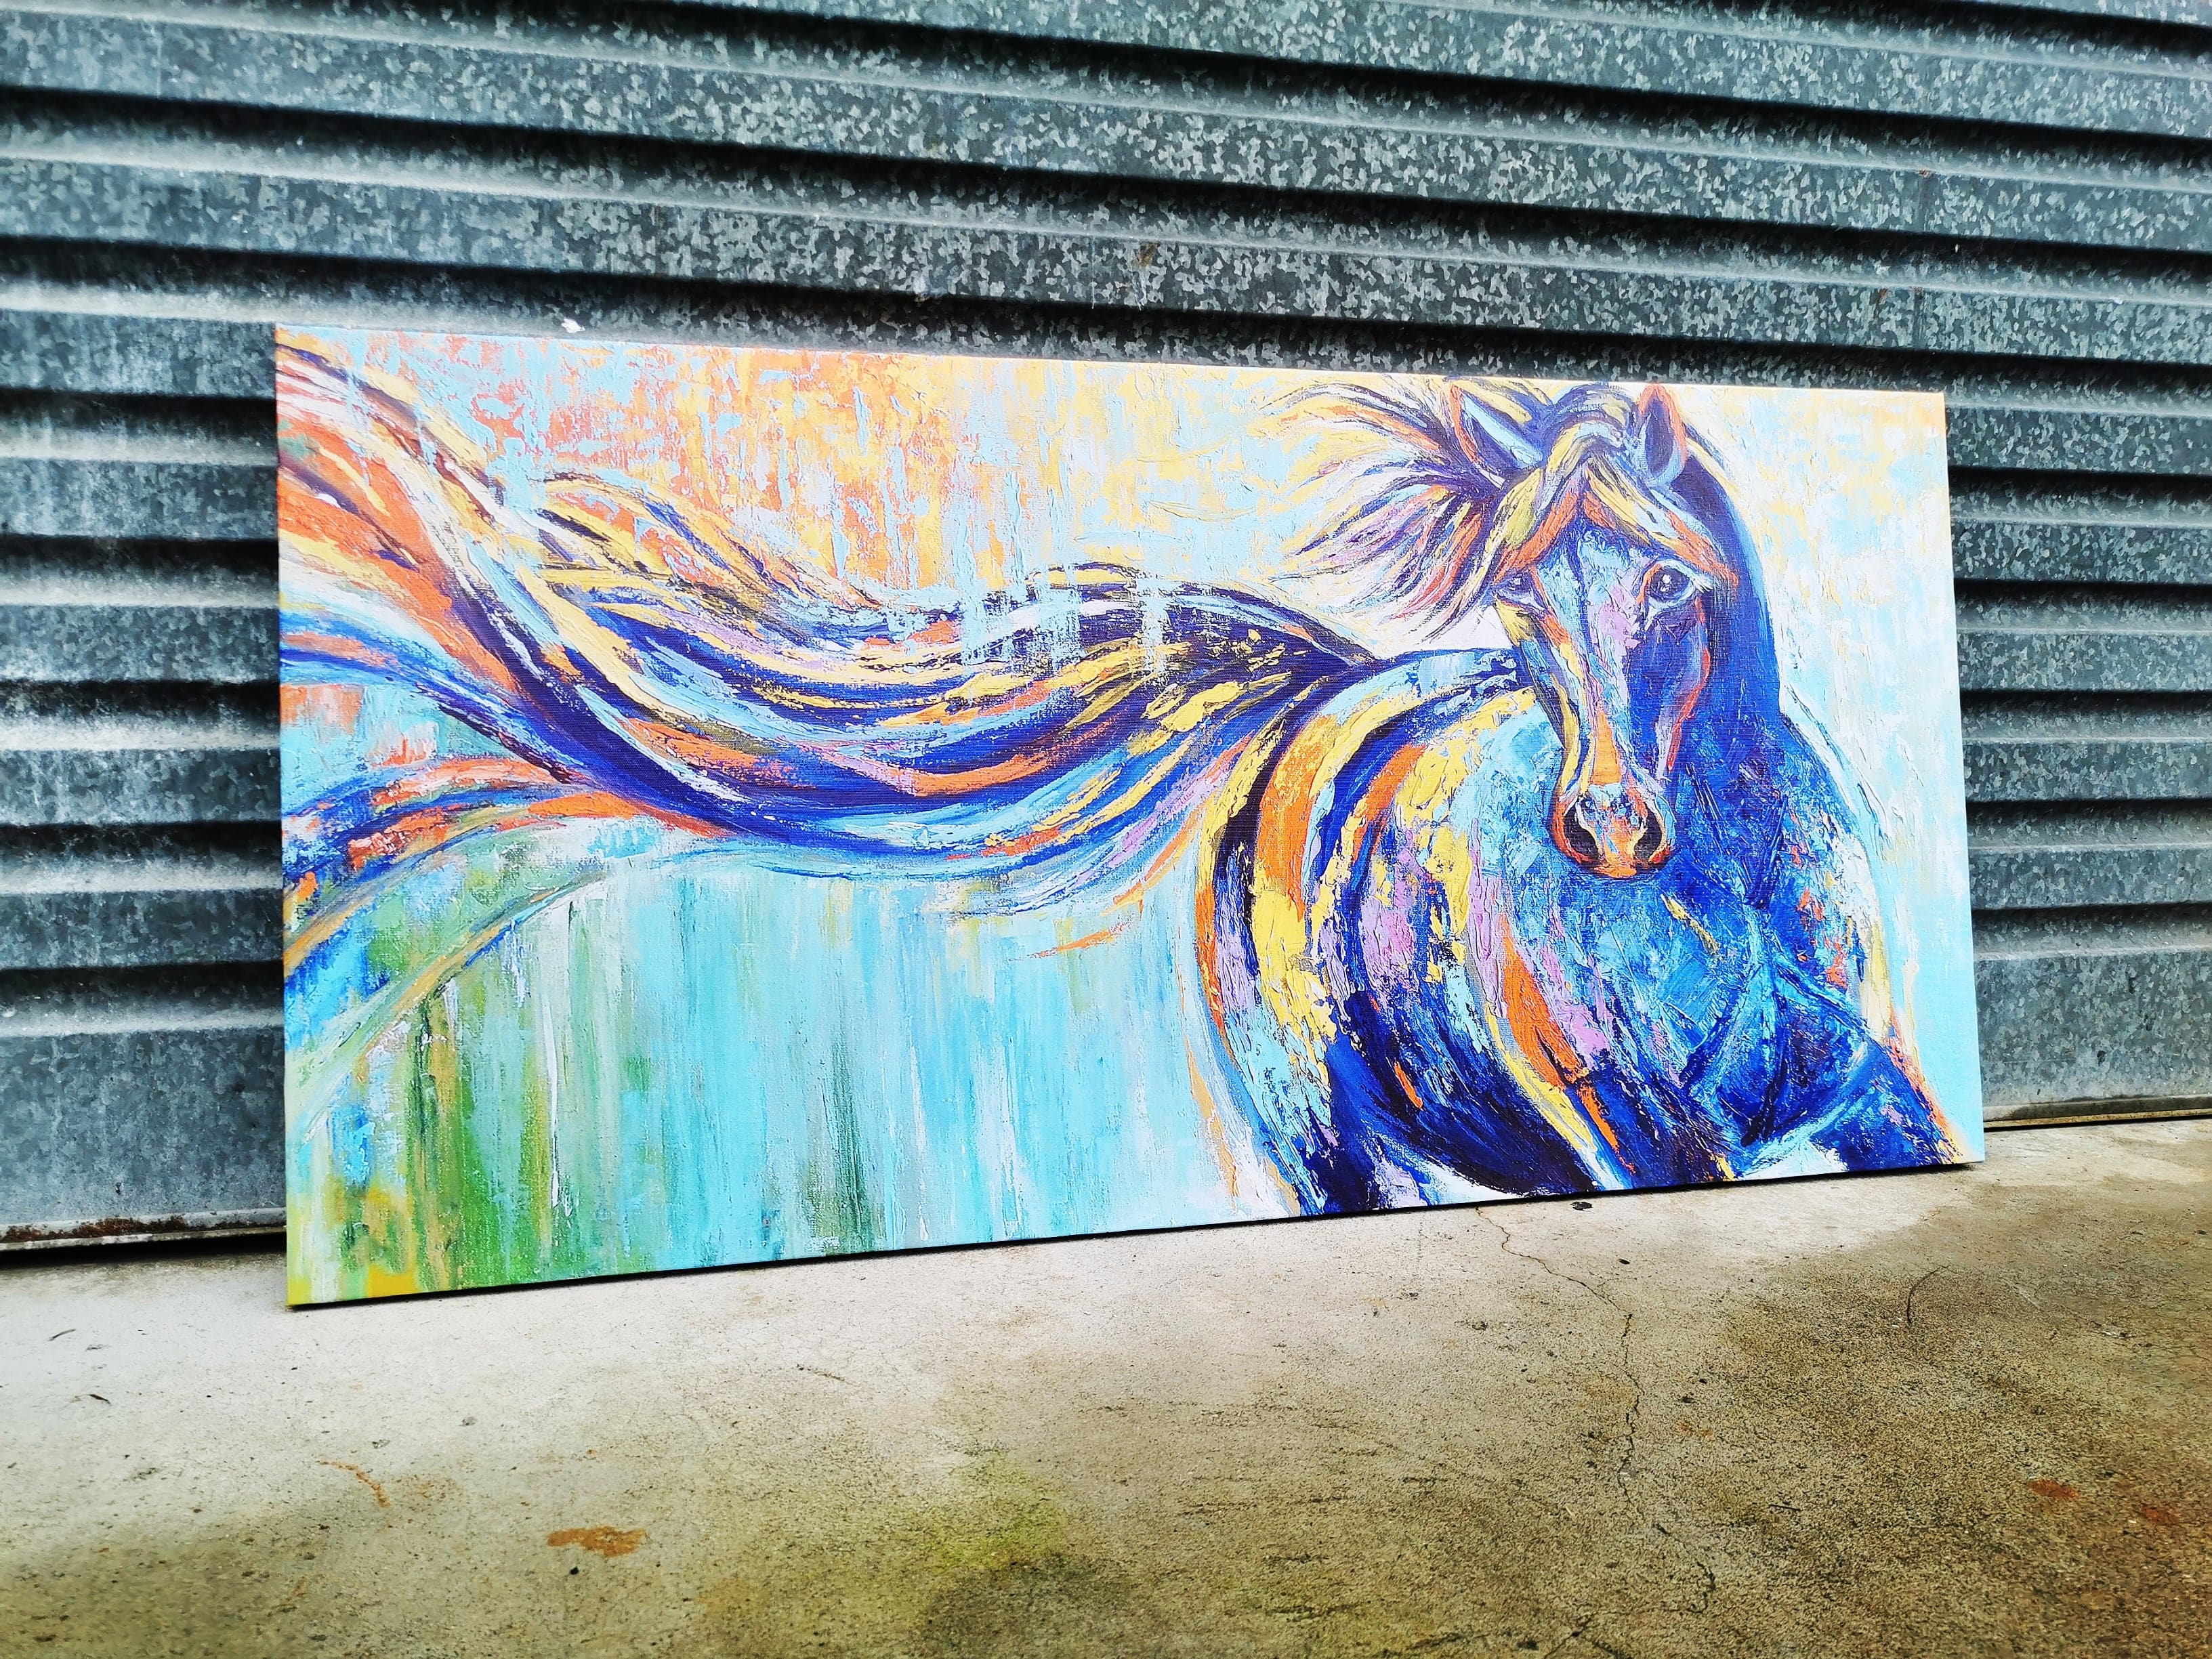 Framed 1 Panel - Horse Art